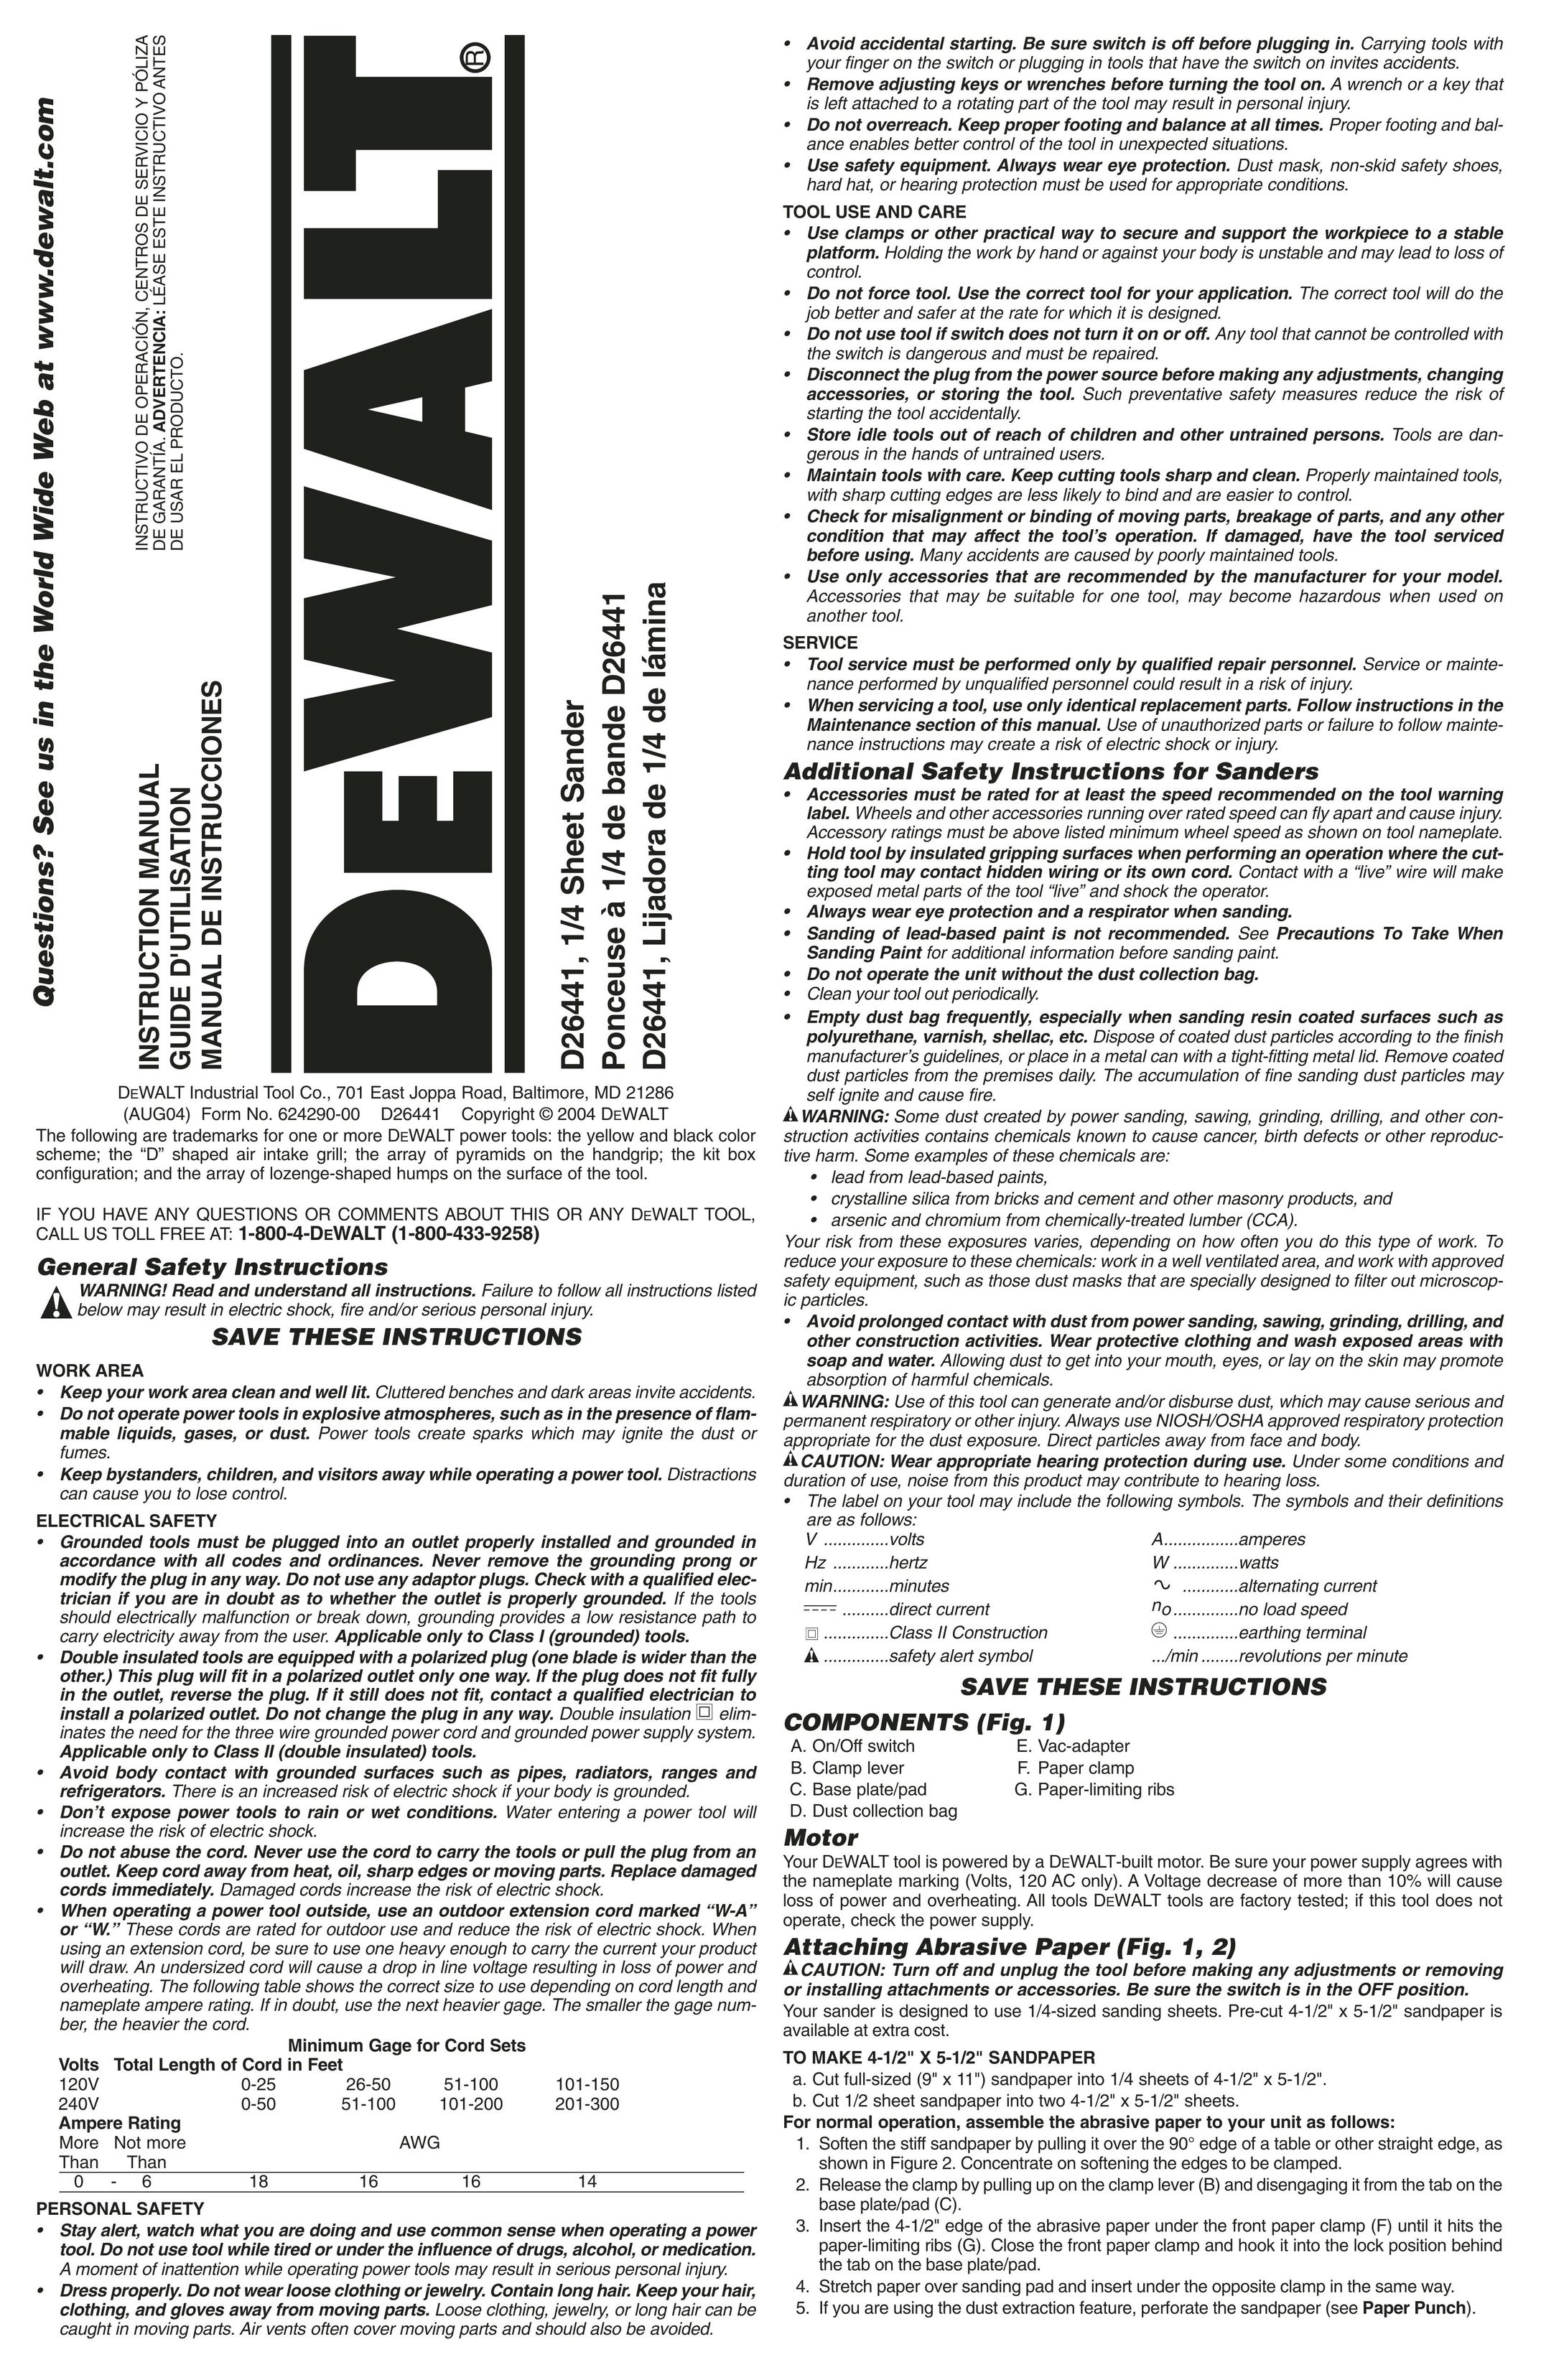 DeWalt D26441 Sander User Manual